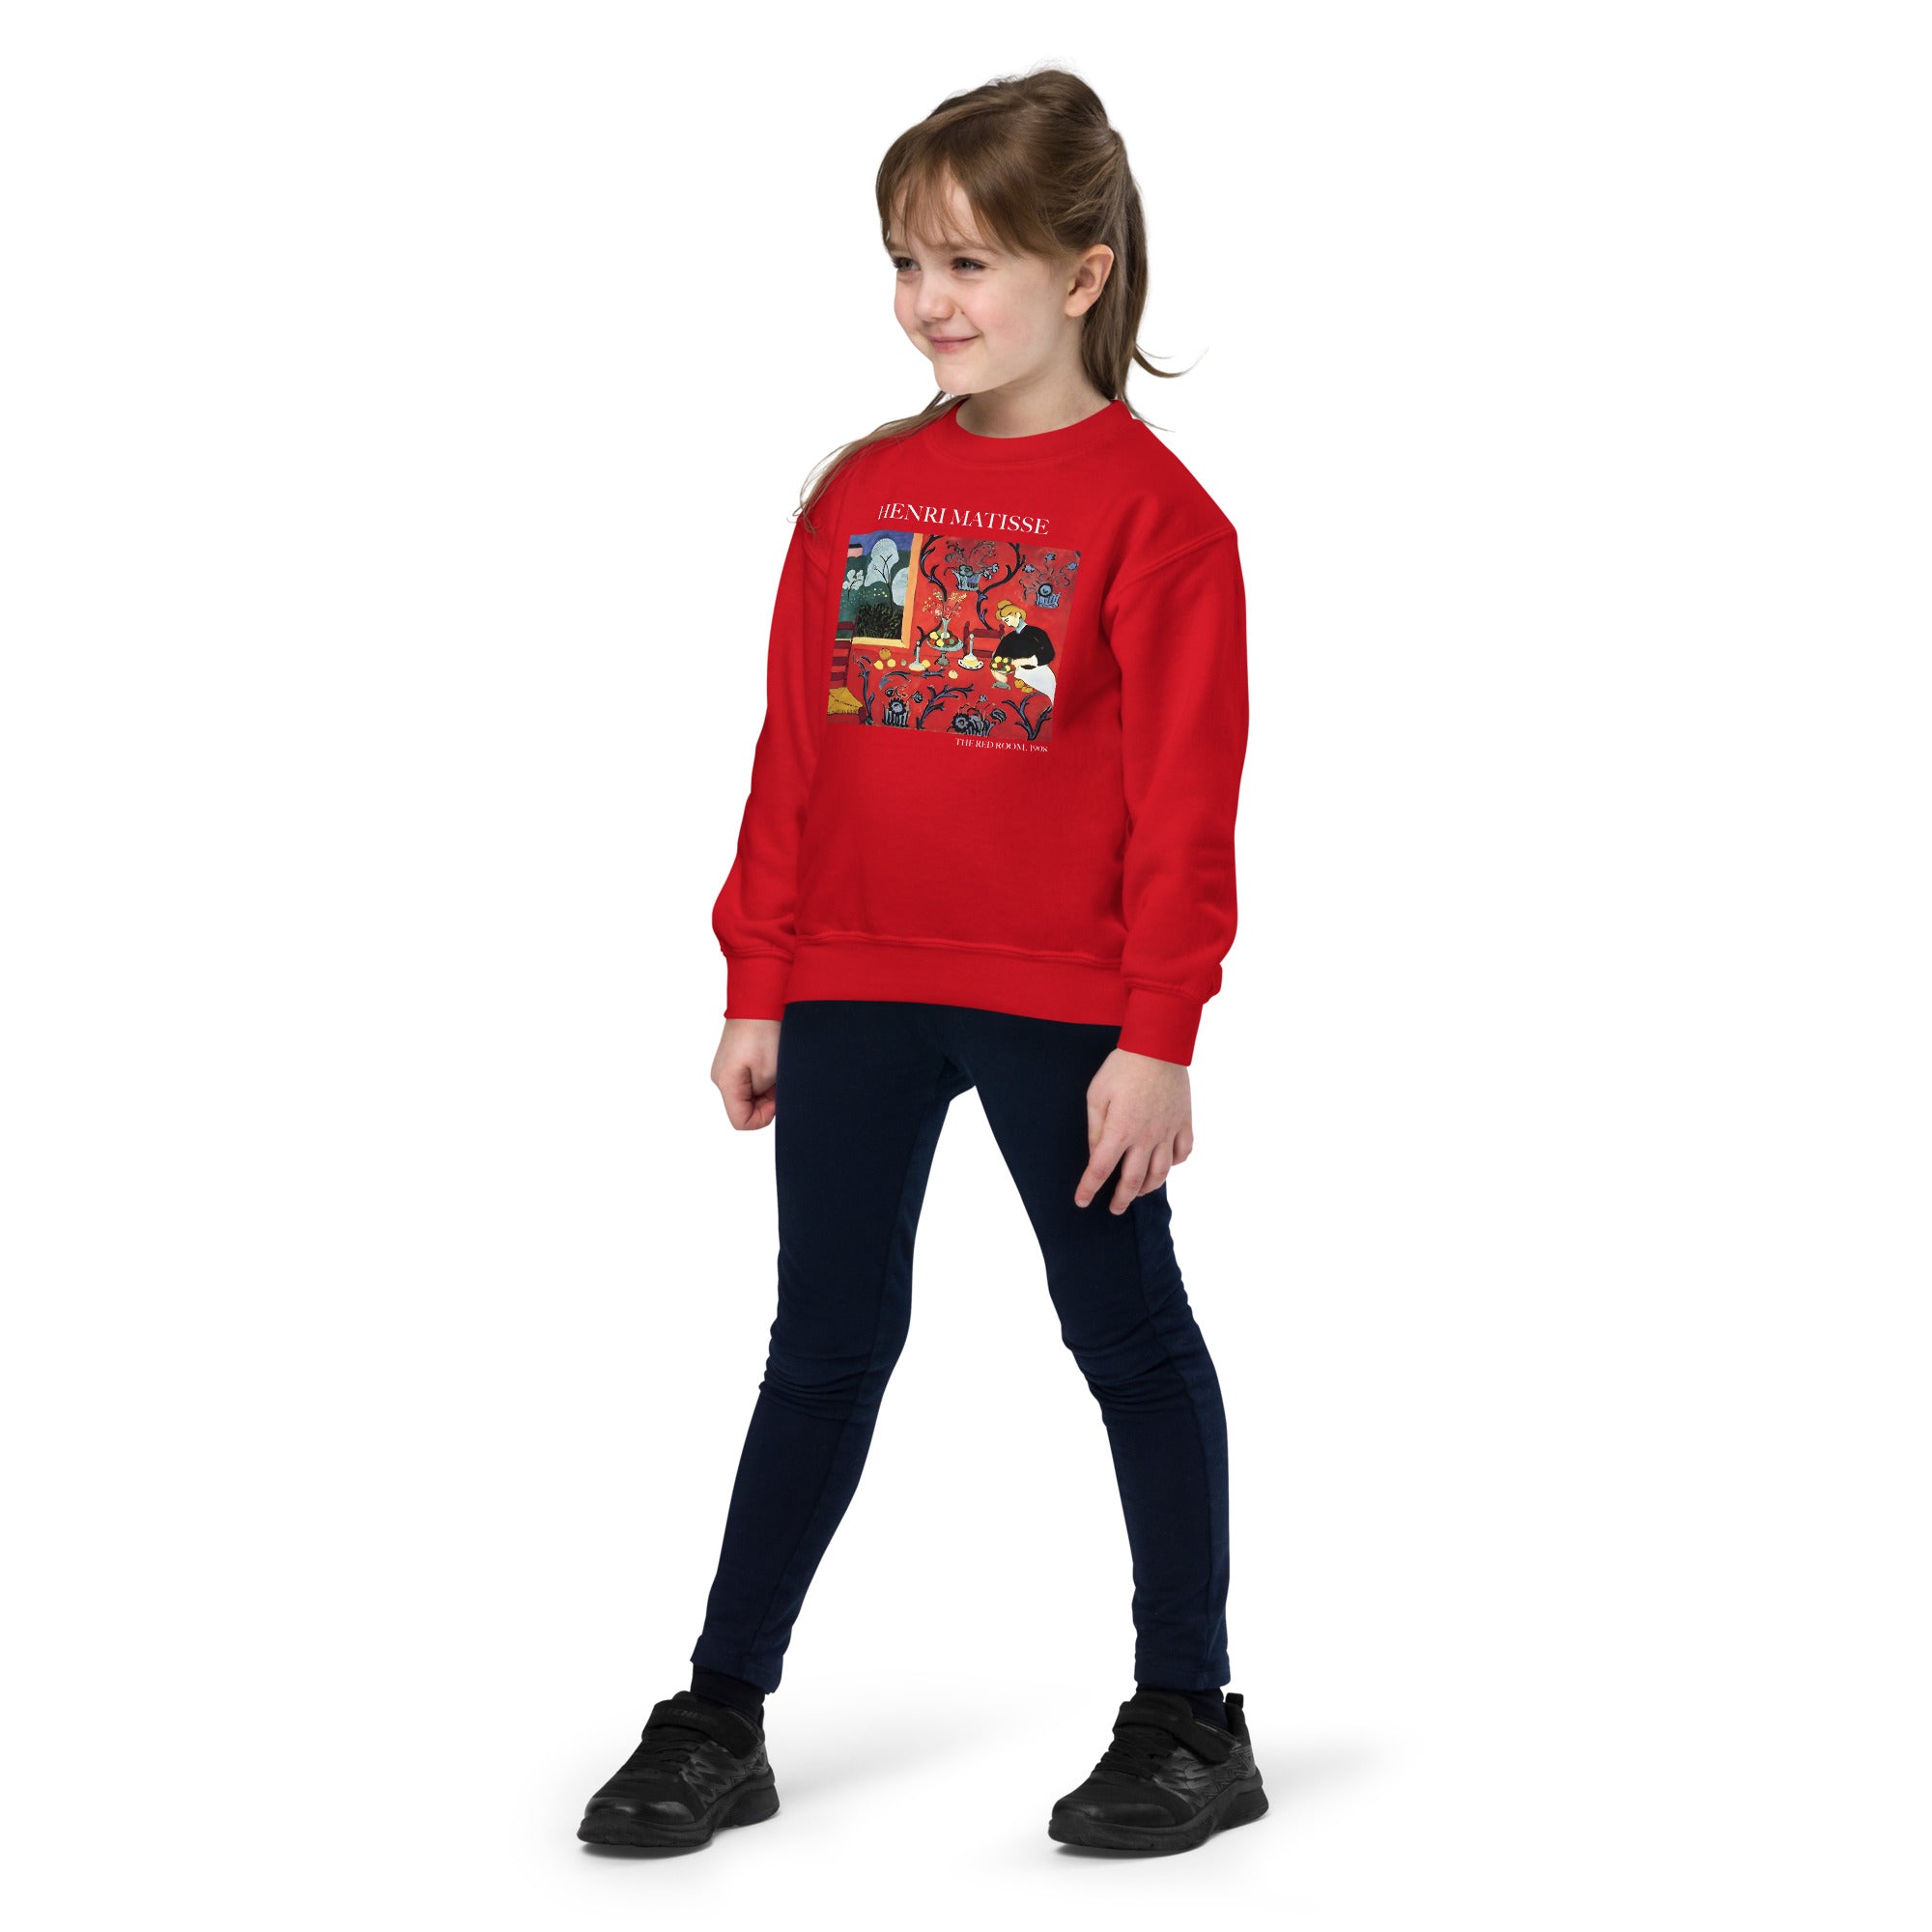 Henri Matisse „Das rote Zimmer“ – Rundhals-Sweatshirt mit berühmtem Gemälde – Premium-Kunst-Sweatshirt für Jugendliche